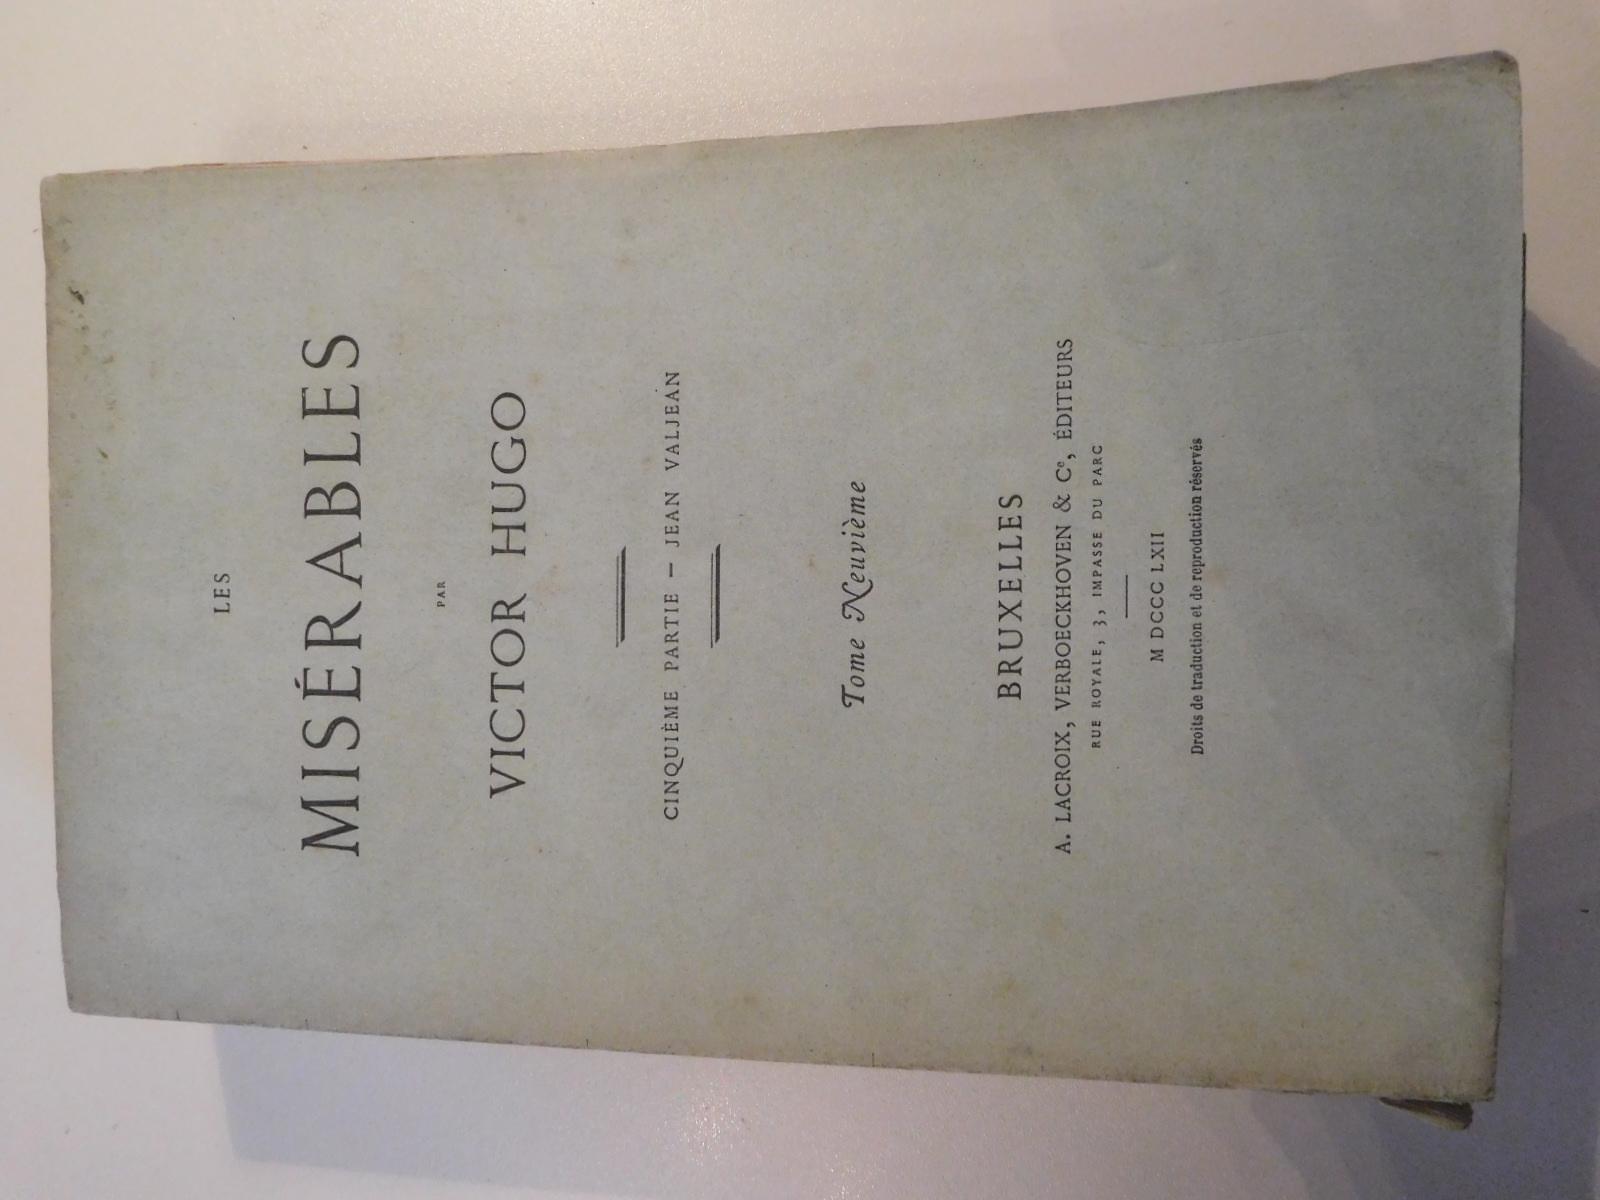 Les Misérables. Cinquième partie – Jean Valjean - Tome neuvième (French language, 1862)